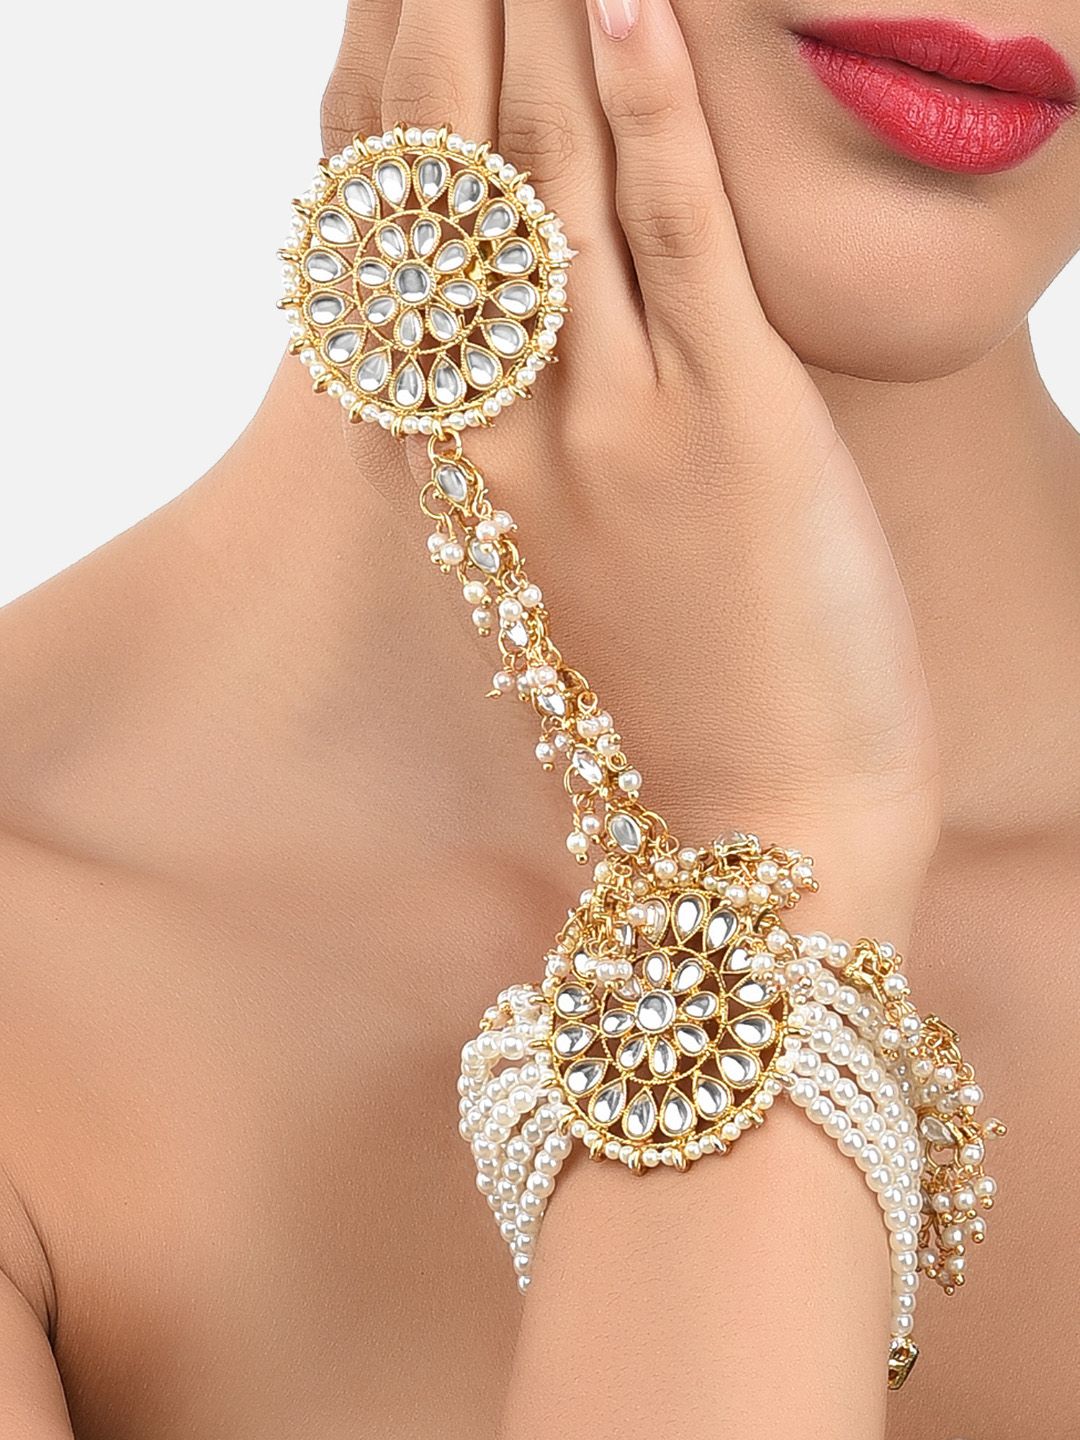 Zaveri Pearls Gold-Toned & White Kundan & Pearl Studded Ring Bracelet Price in India